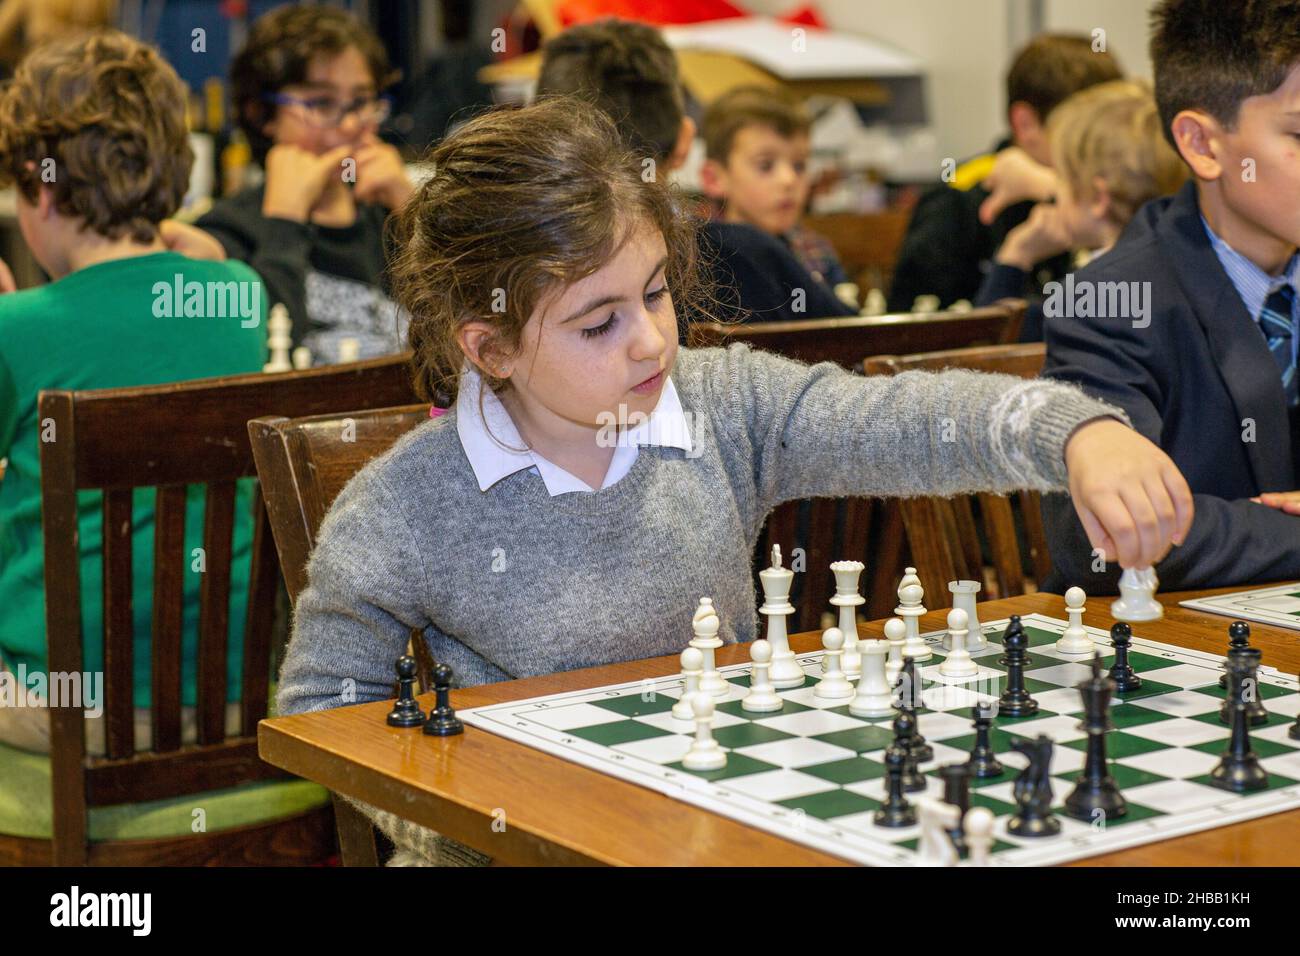 Smartick Chess, para que los niños aprendan a jugar al ajedrez – Bienestar  Institucional